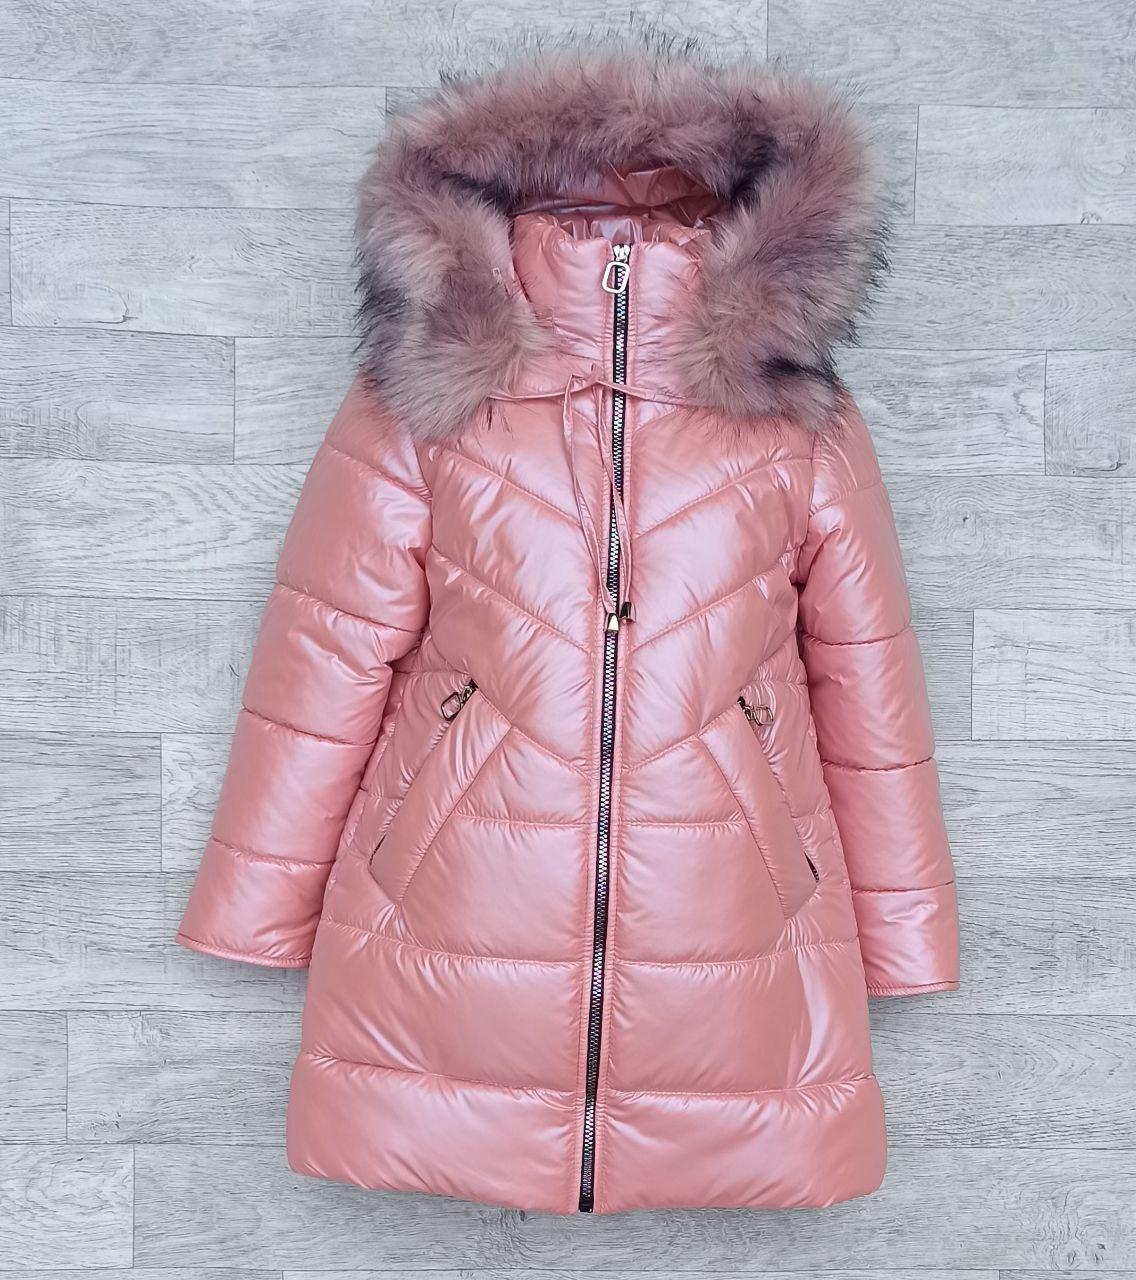 Дитяча зимова куртка пальто «Перлина» для дівчинки 5-12 років, зріст 110-140, модна подовжена курточка пуховик, тепла парка - зима